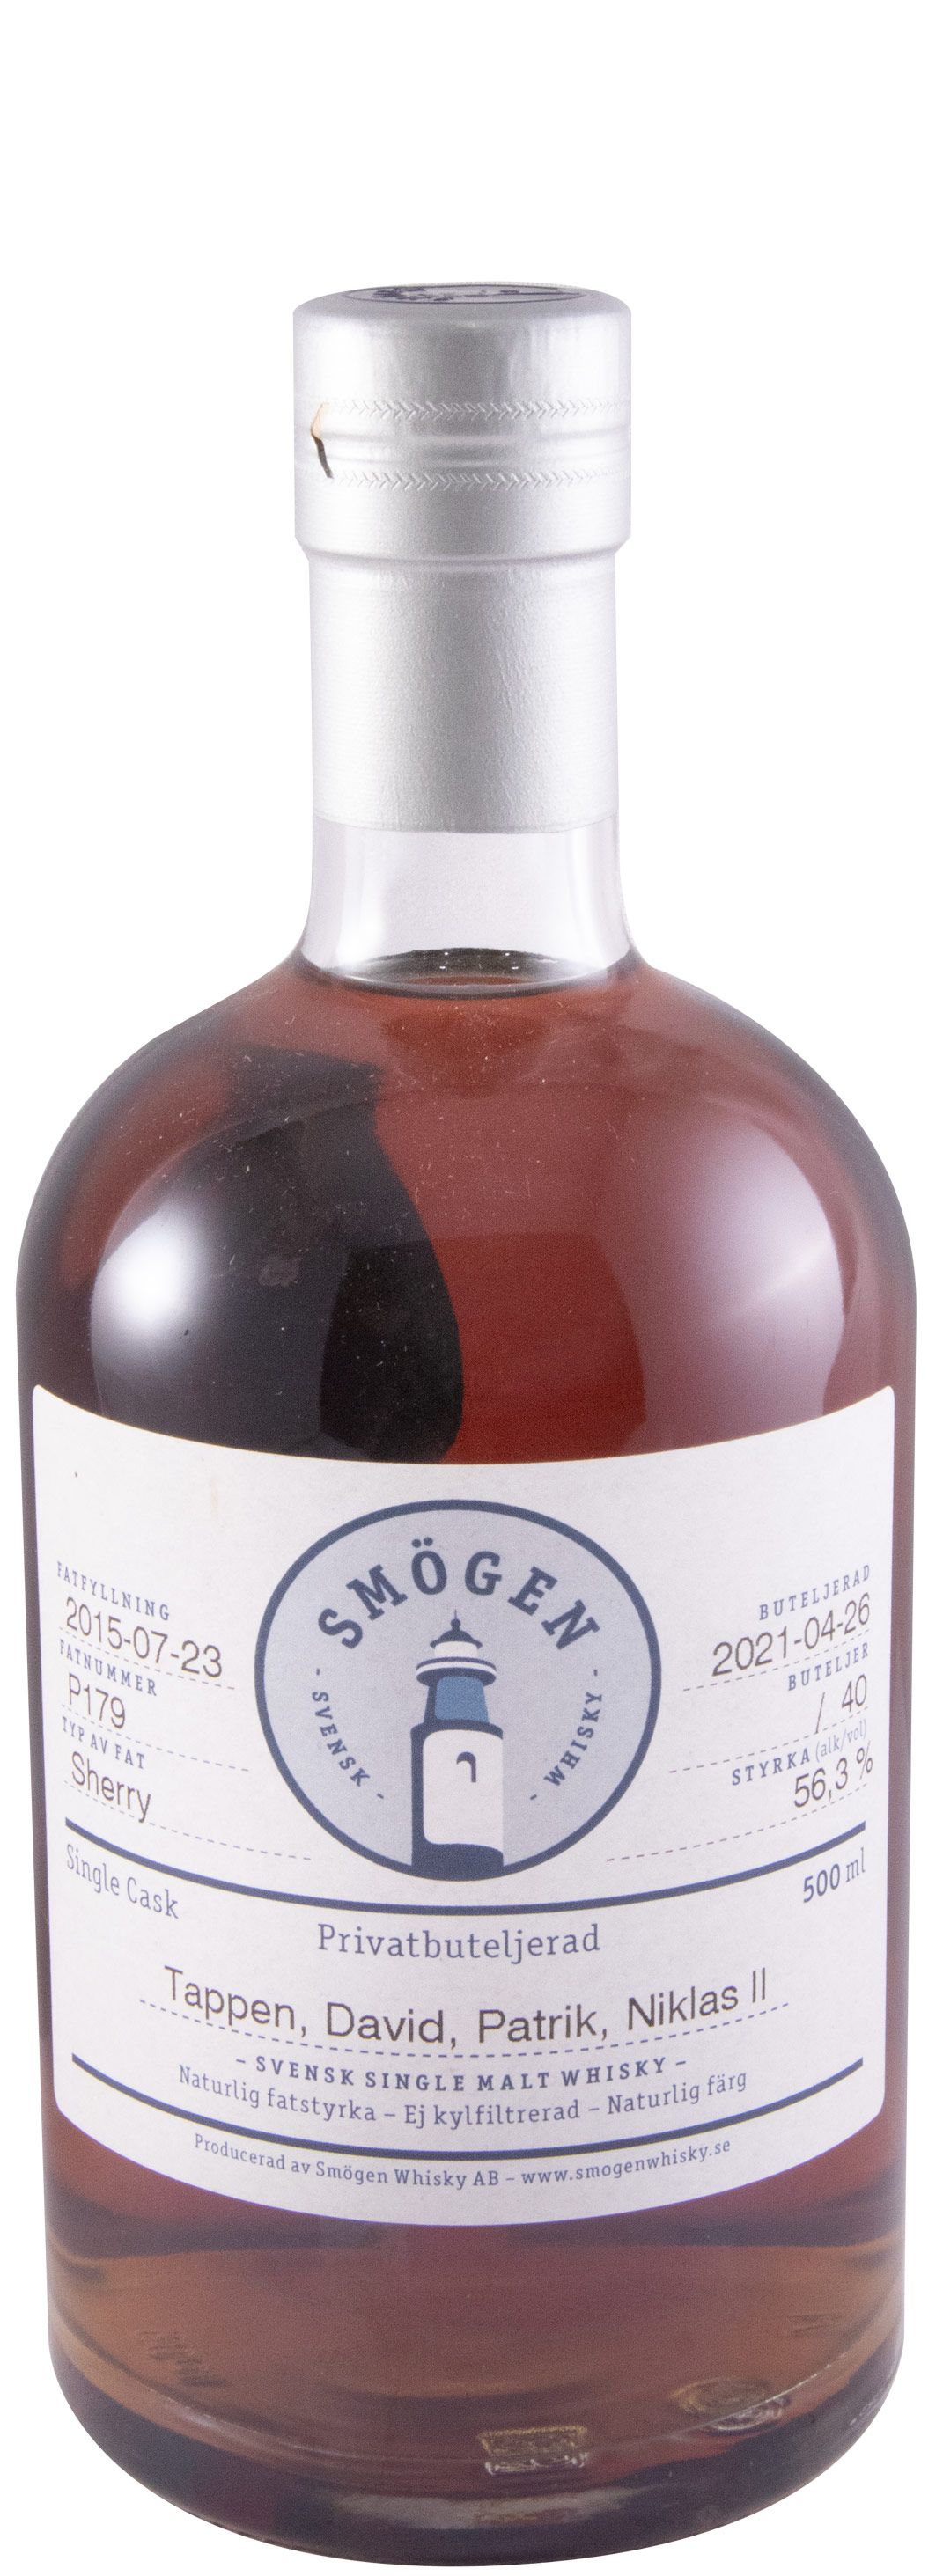 2015 Smögen Sherry 6 years (bottle n.º 40 - P179) 50cl